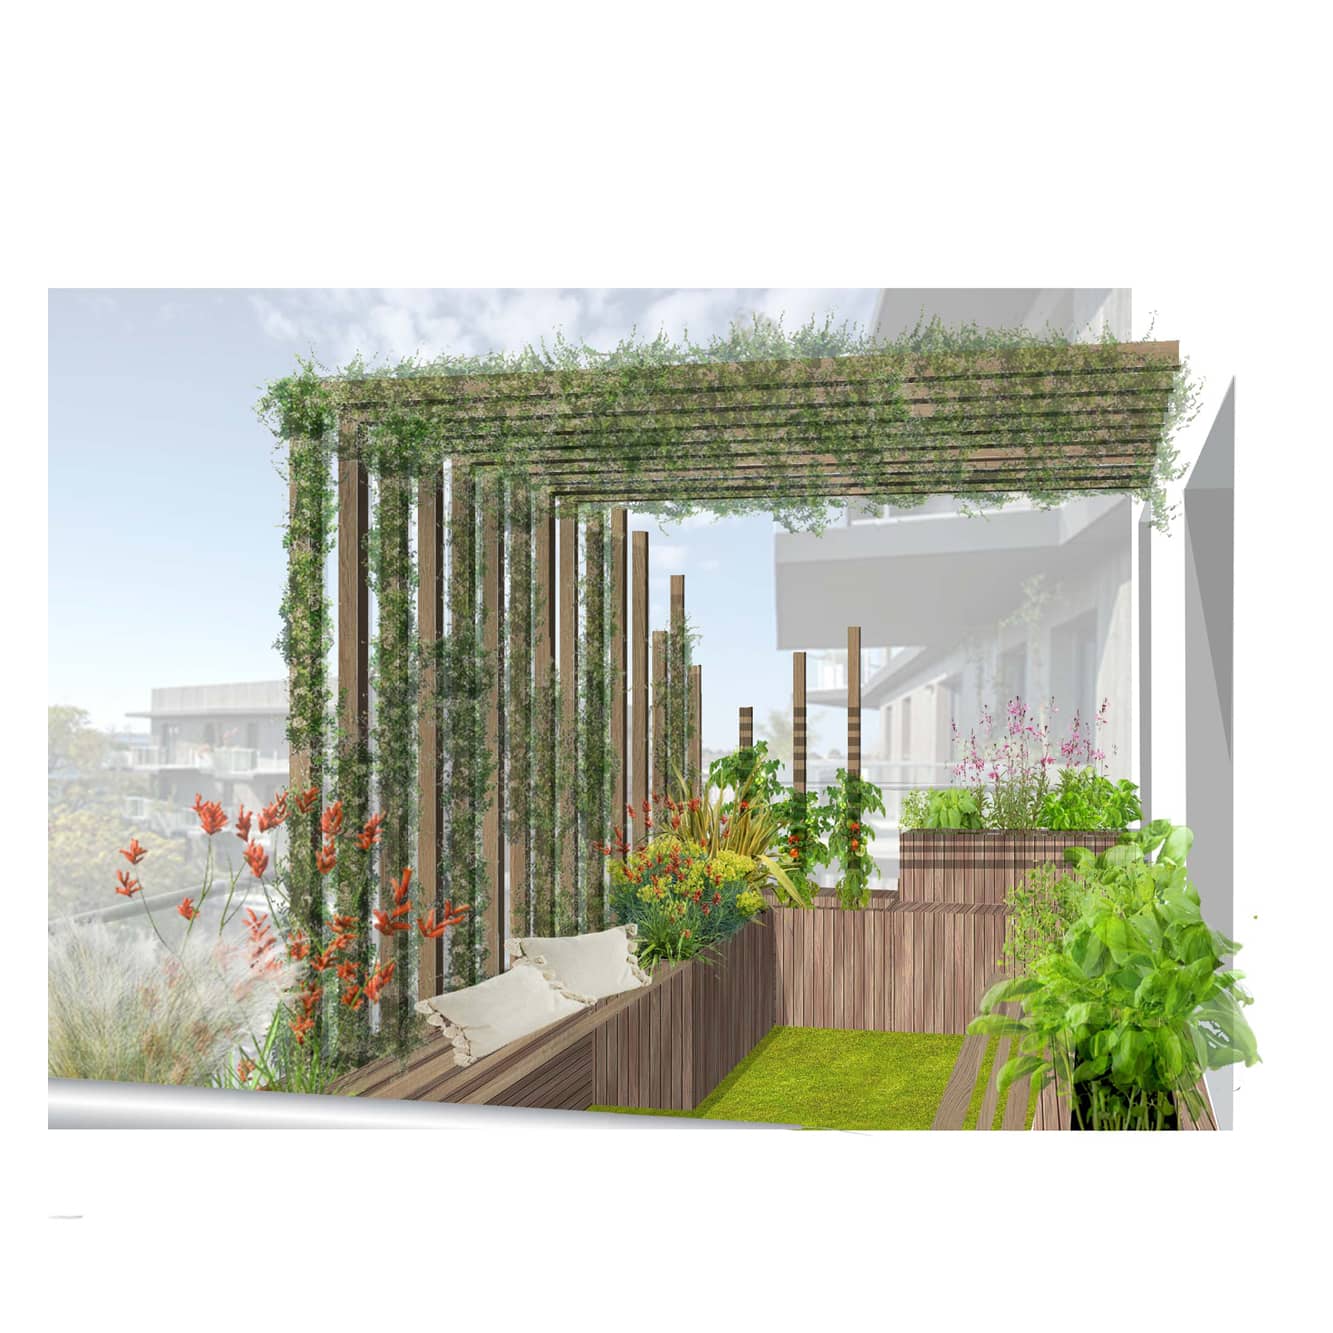 Plan d'aménagement paysager d'une terrasse